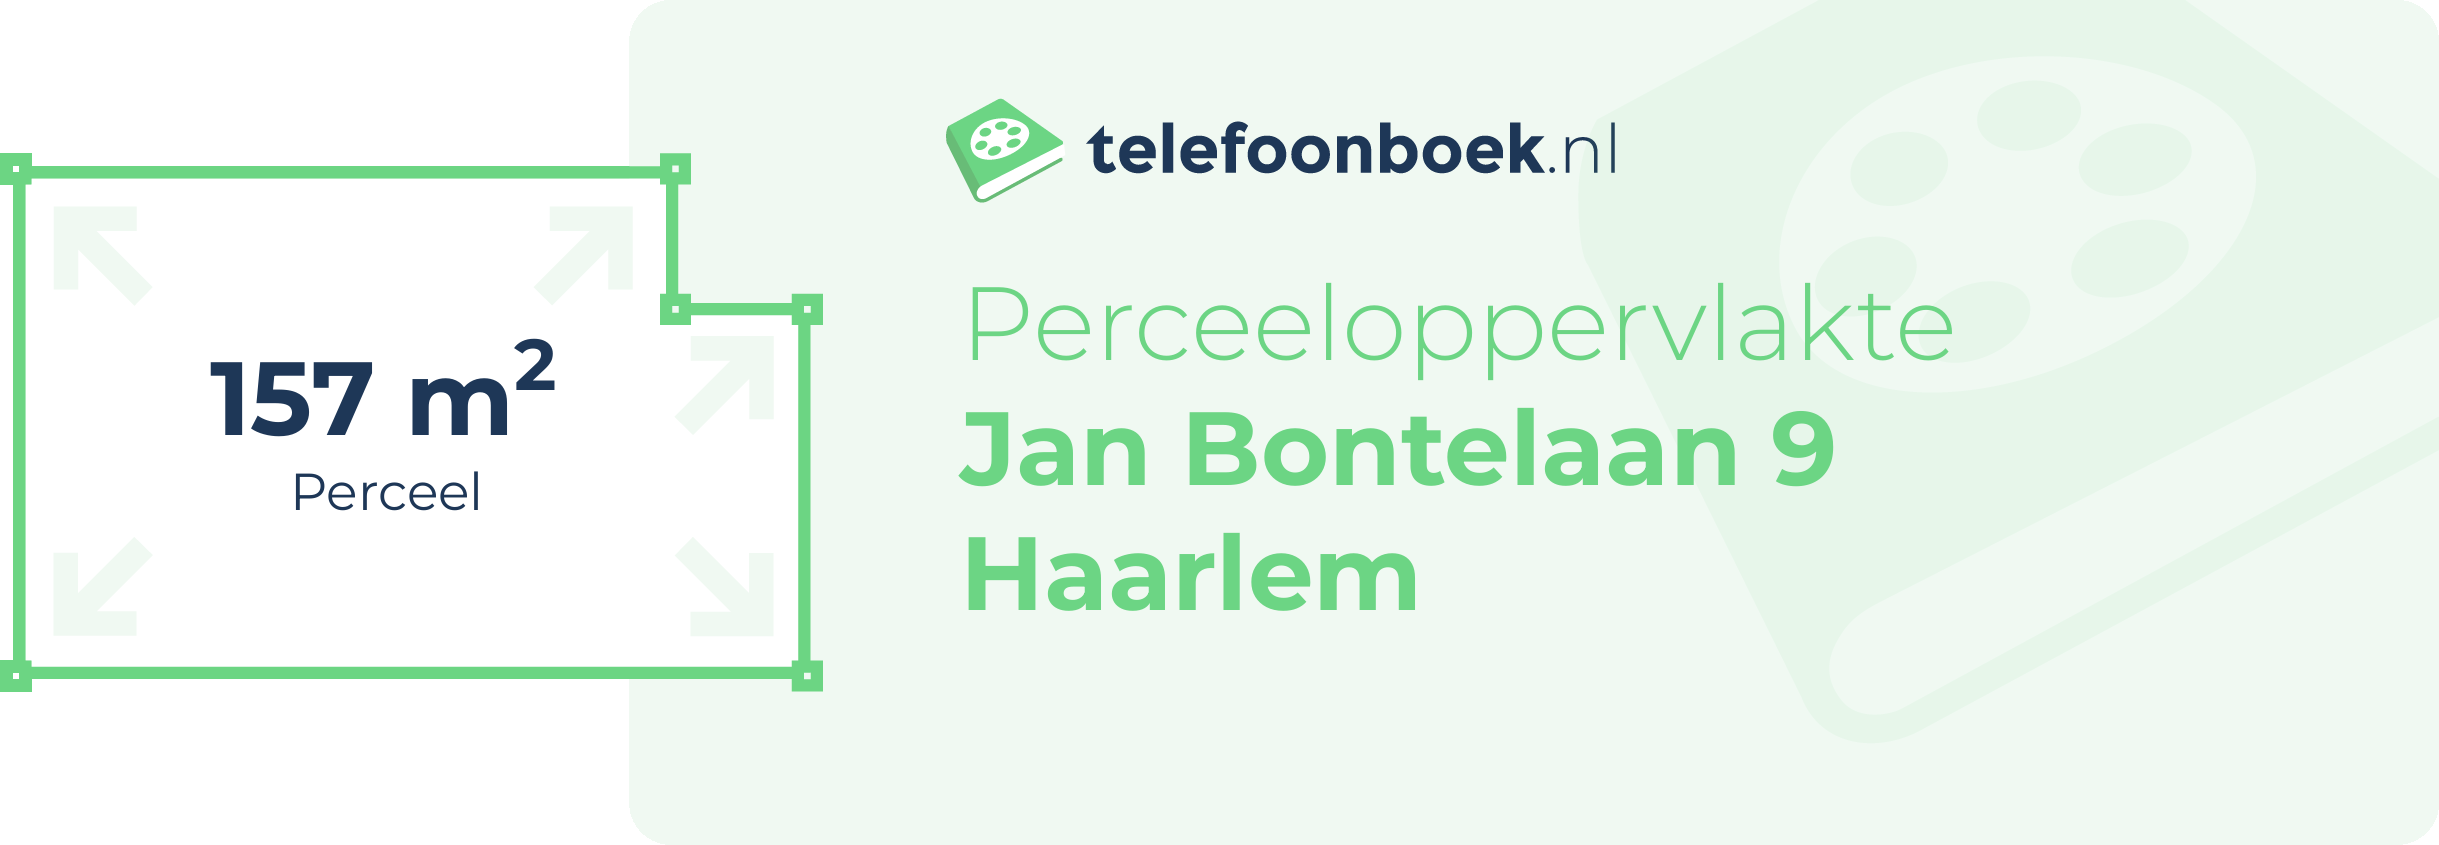 Perceeloppervlakte Jan Bontelaan 9 Haarlem